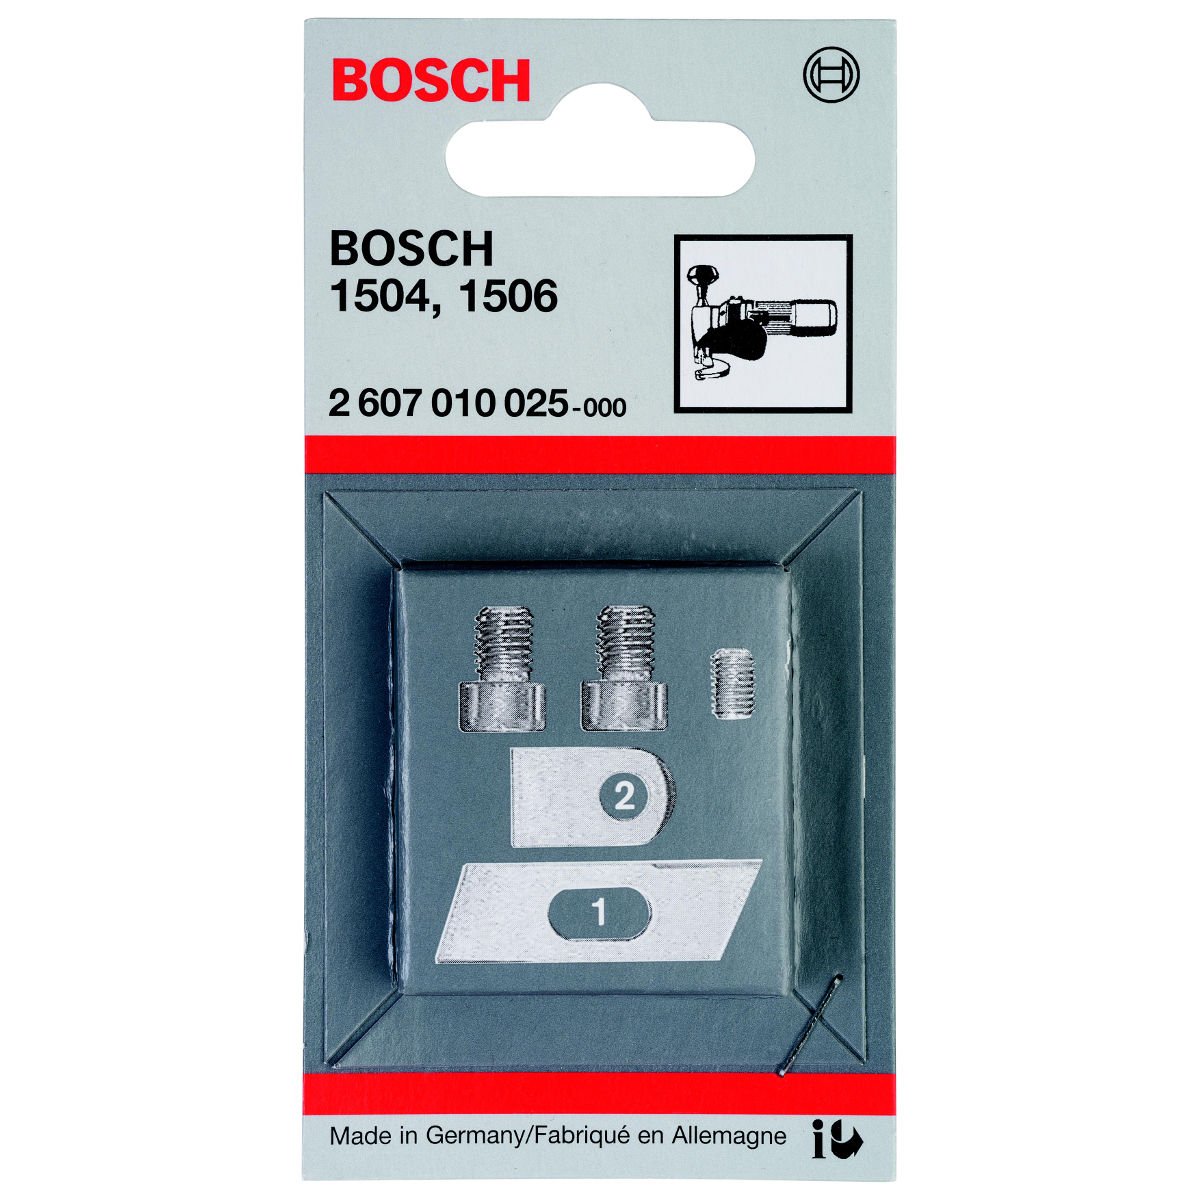 Bosch - GSC 2 8 için 5 Parça Bıçak Seti